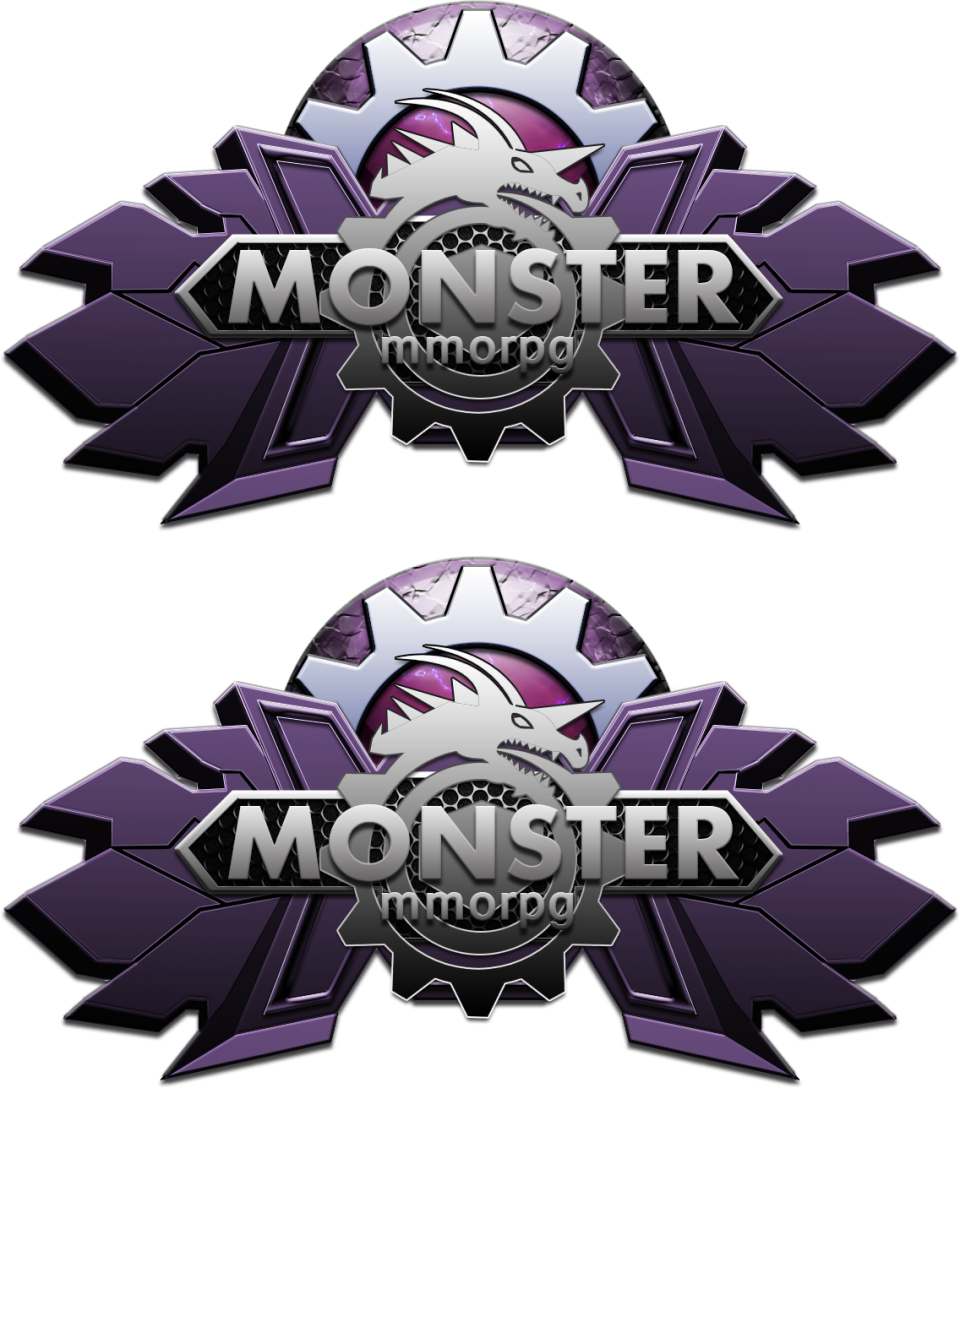 ✓ Monster MMORPG new monsters / update / V 2.6.1